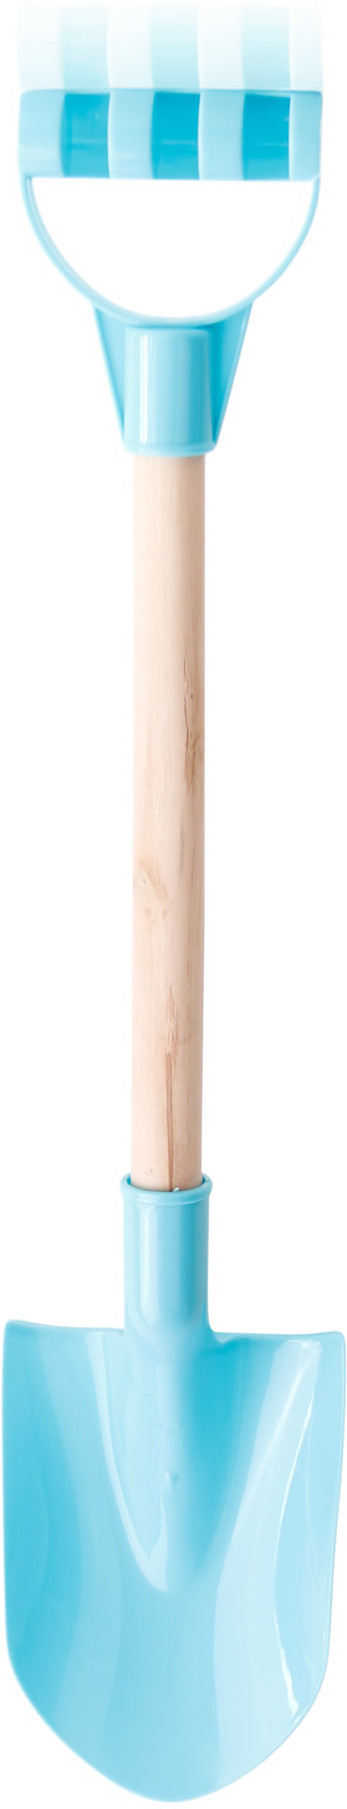 Schaufel mit Holzstiel ca. 60 cm